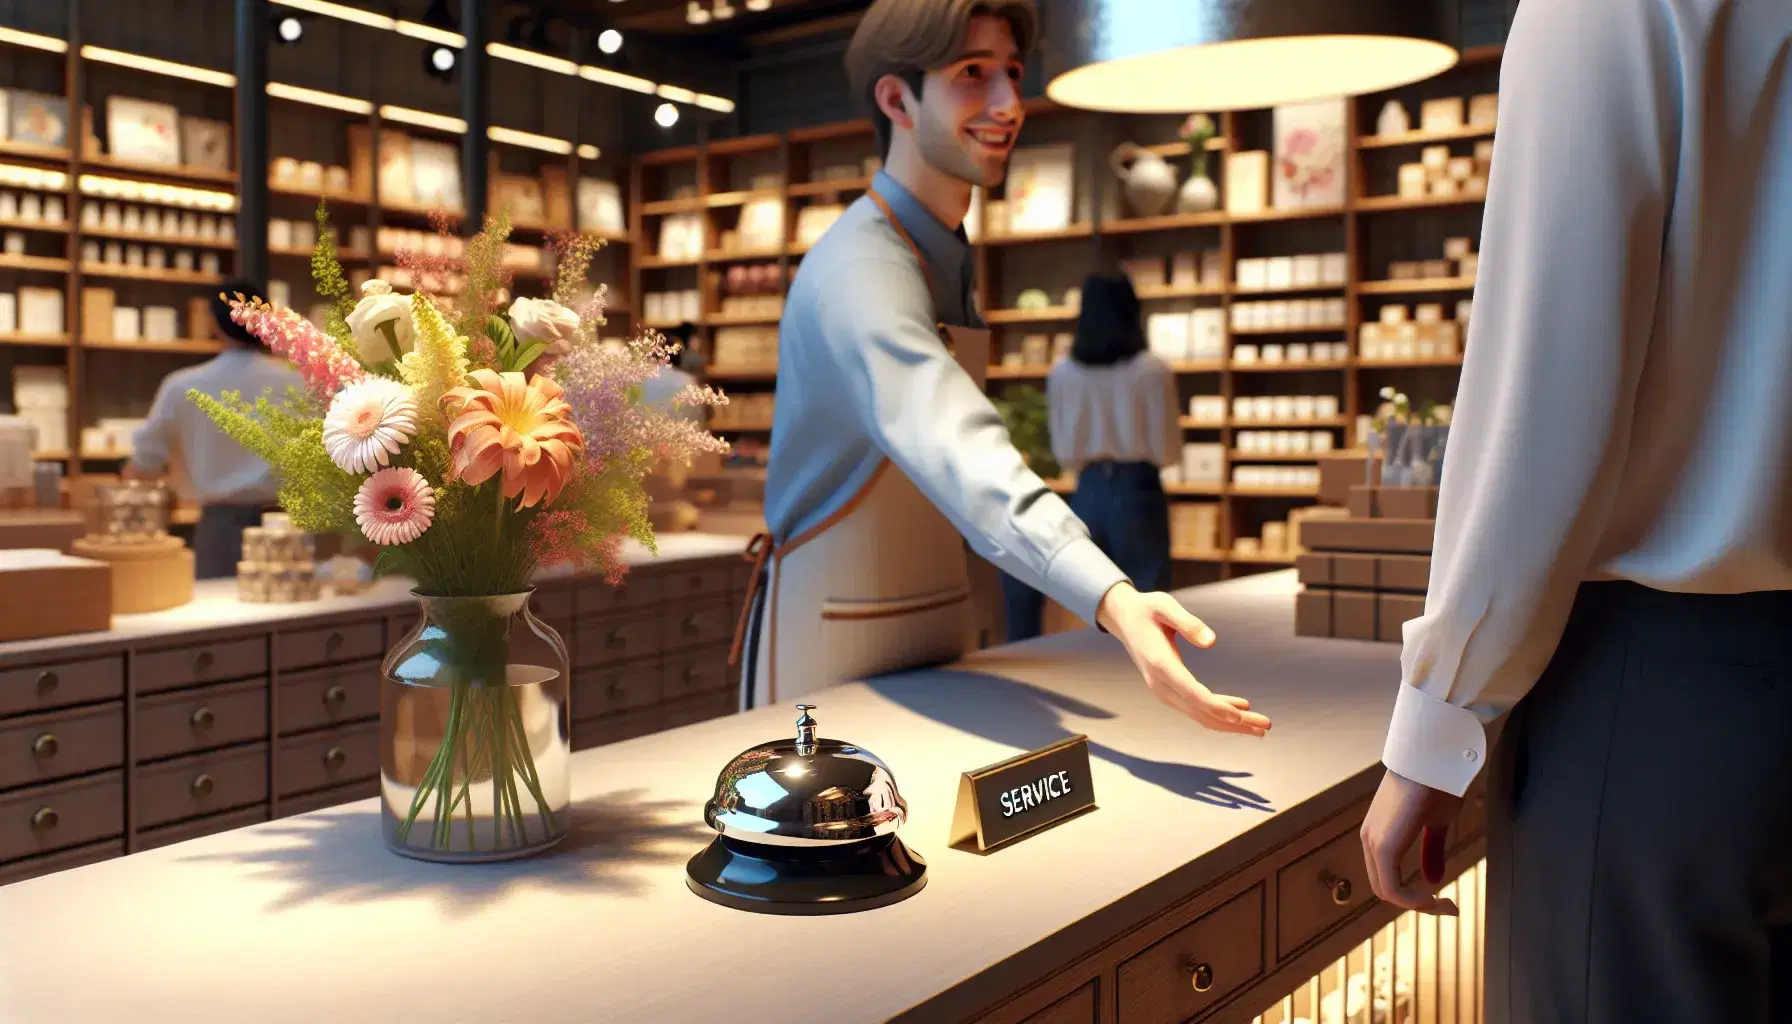 Empleado sonriente en tienda extendiendo la mano hacia cliente con camisa blanca, mostrador con timbre y arreglo floral colorido, estantes con productos al fondo.